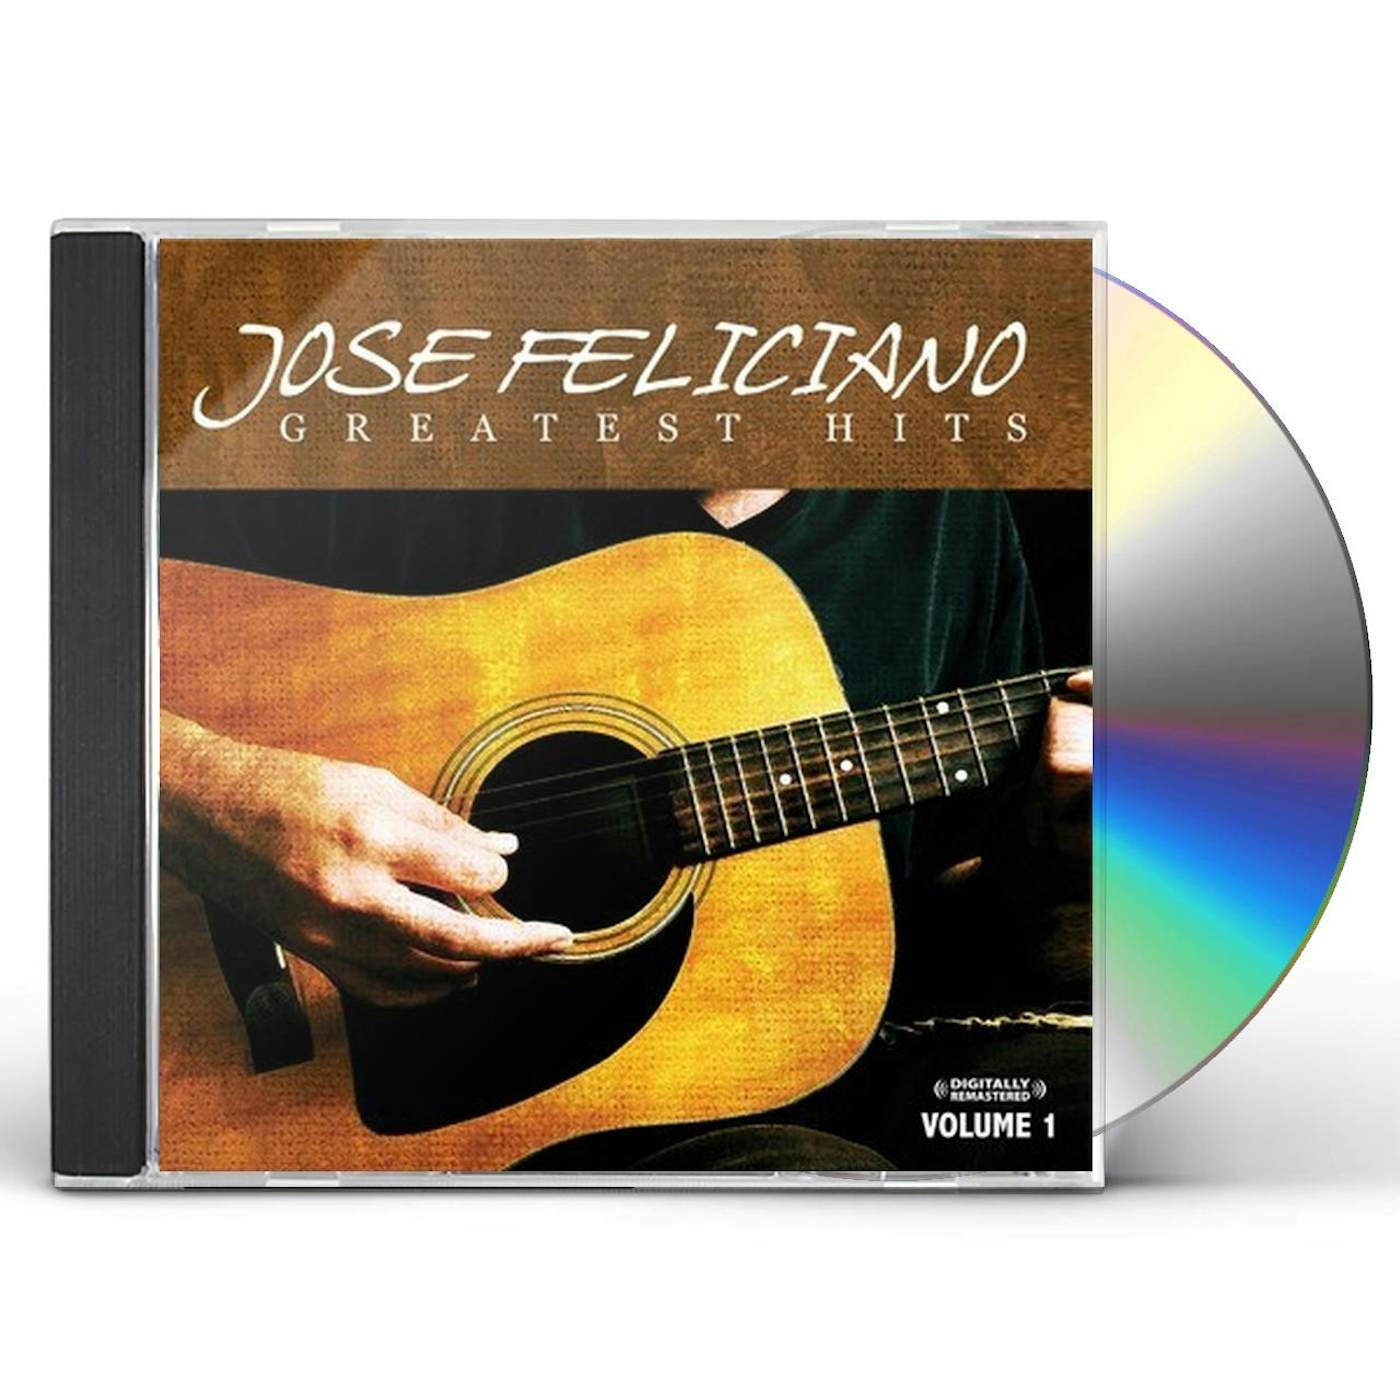 José Feliciano GREATEST HITS VOL. 1 CD